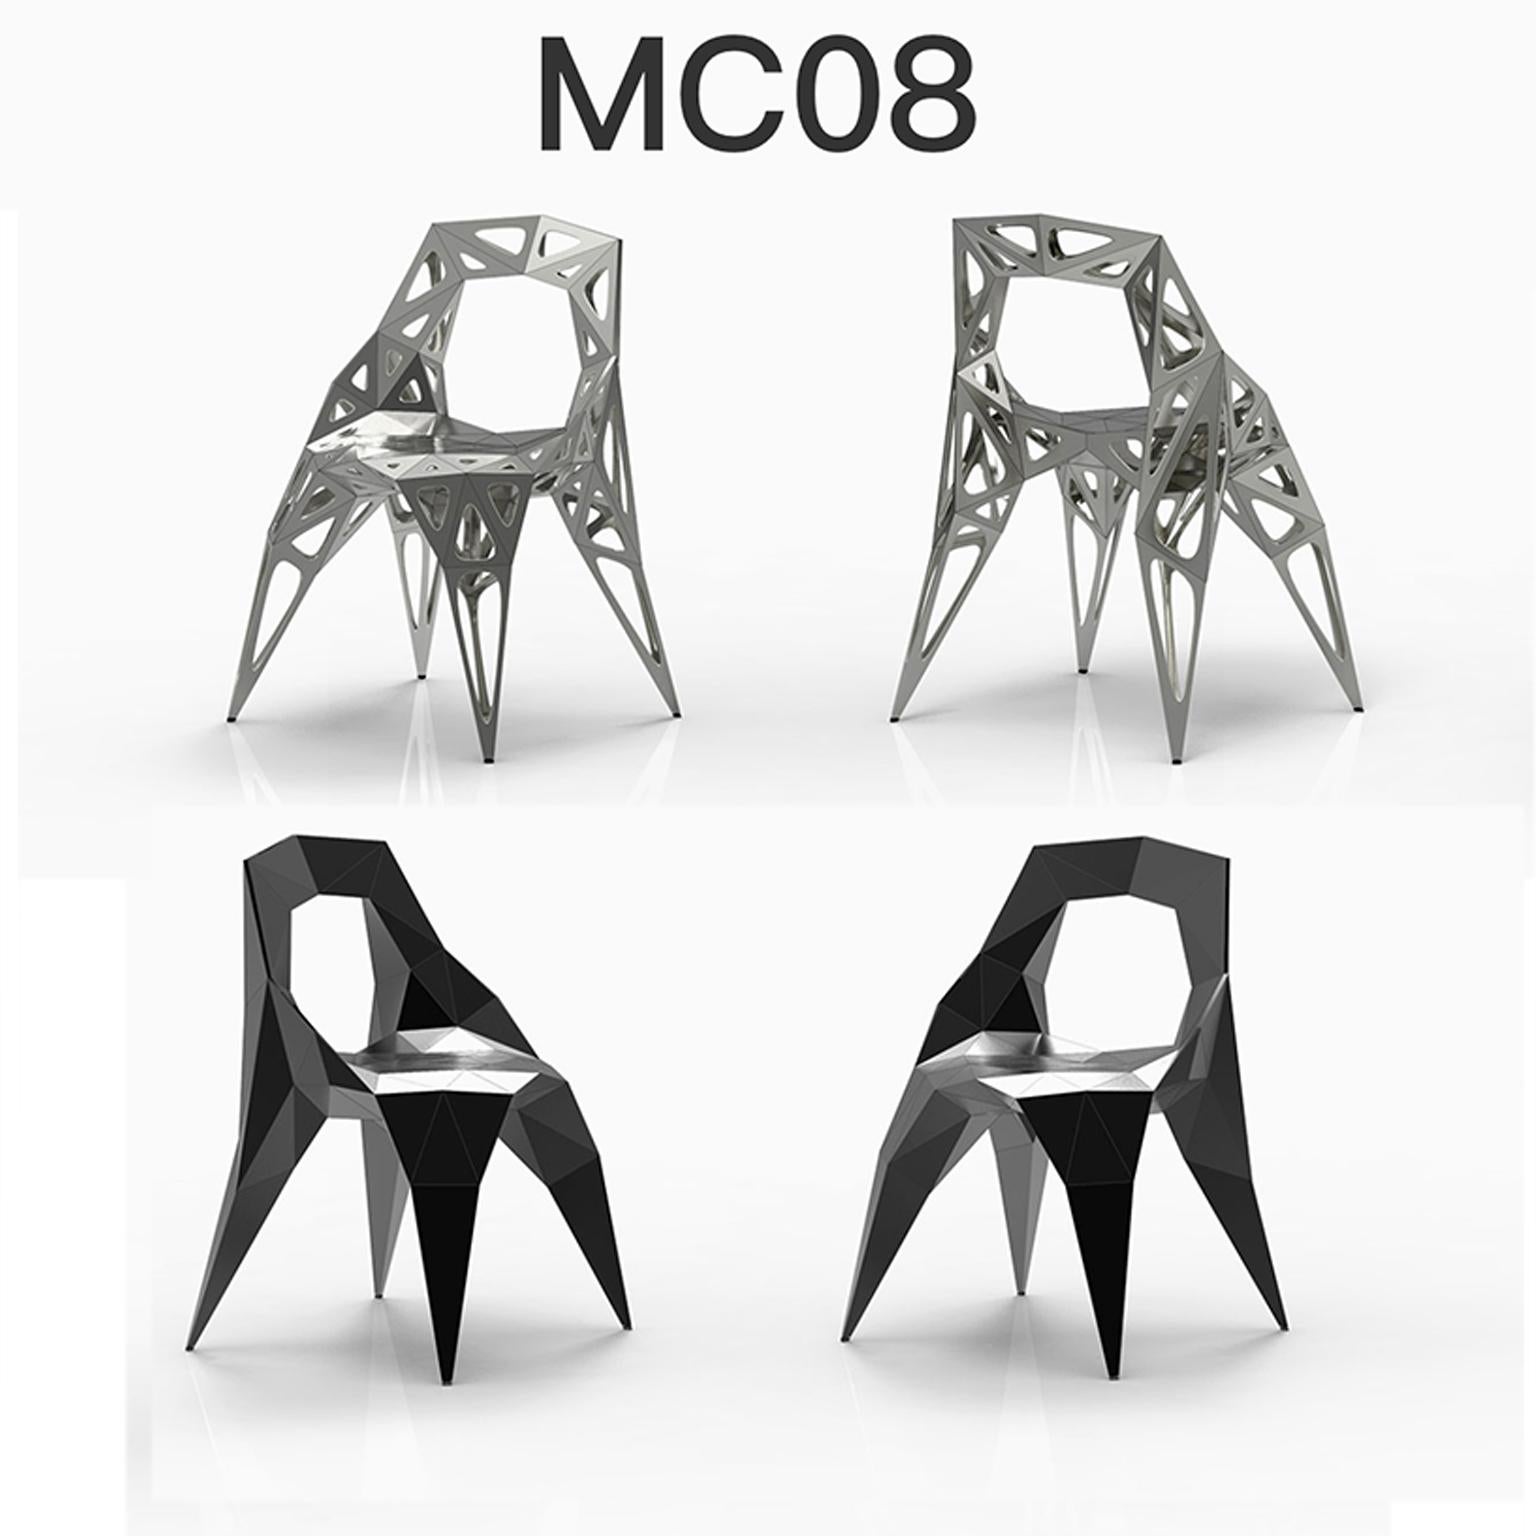 anpassbar
outdoor+Indoor
4 offizielle Stuhltypen / verfügbar
solide
punkte
rahmen
2 Farben offiziell / verfügbar / Ausführung in poliert/matt
schwarz
silber

Der Möbeldesigner Zhoujie Zhang ist bekannt für die Integration von automatisiertem